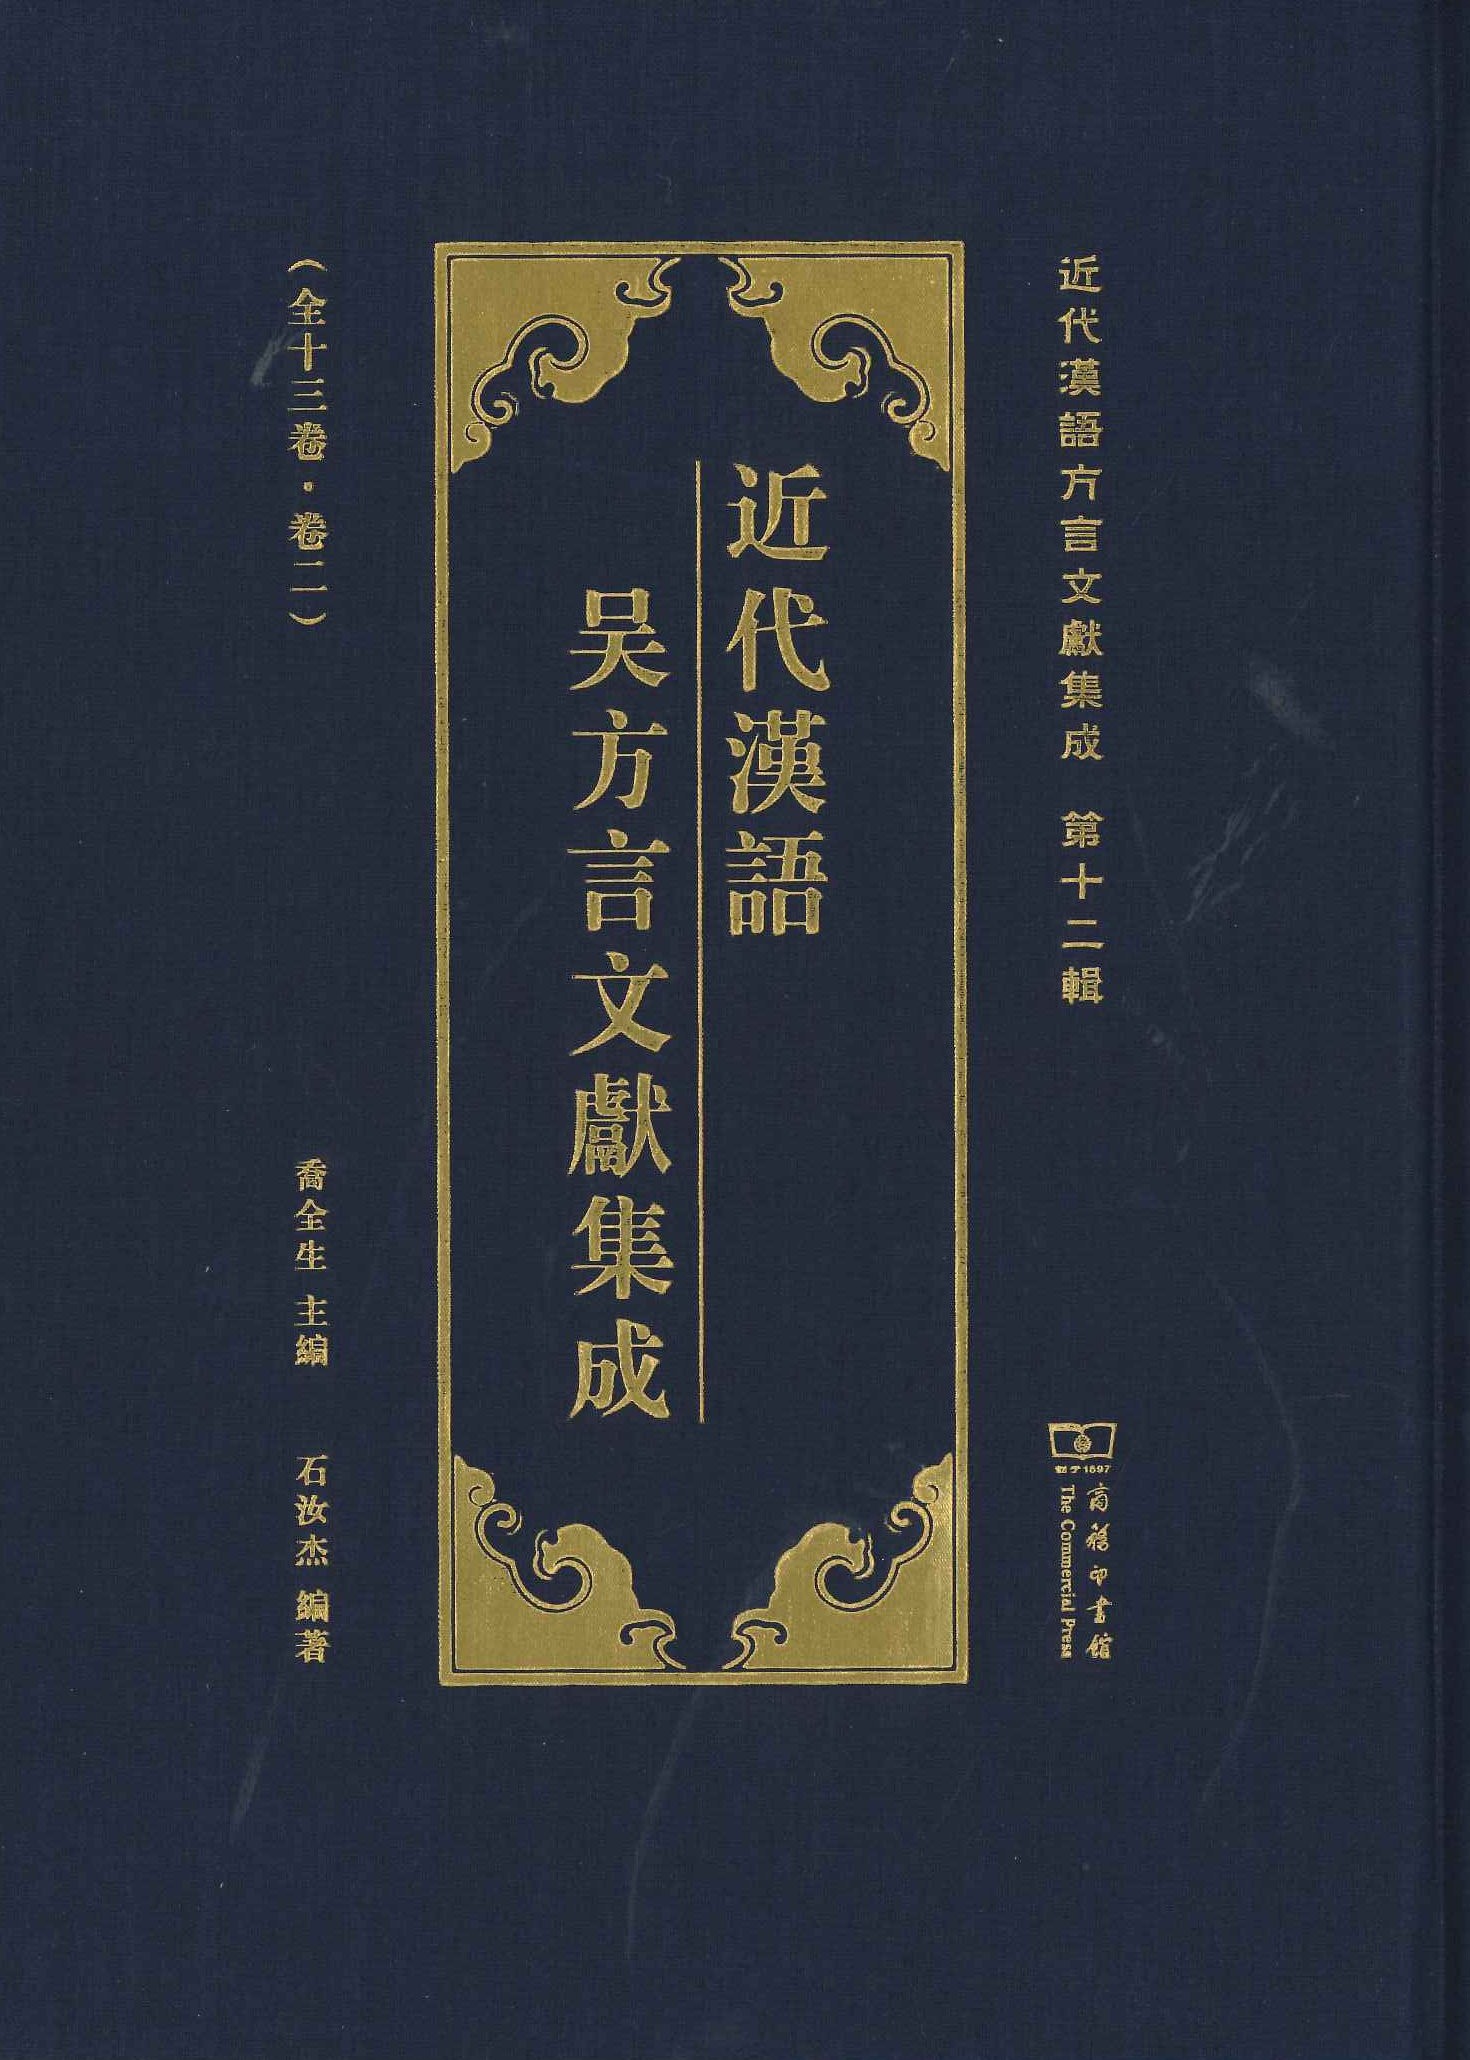 近代汉语吴方言文献集成(近代汉语方言集成第12种)